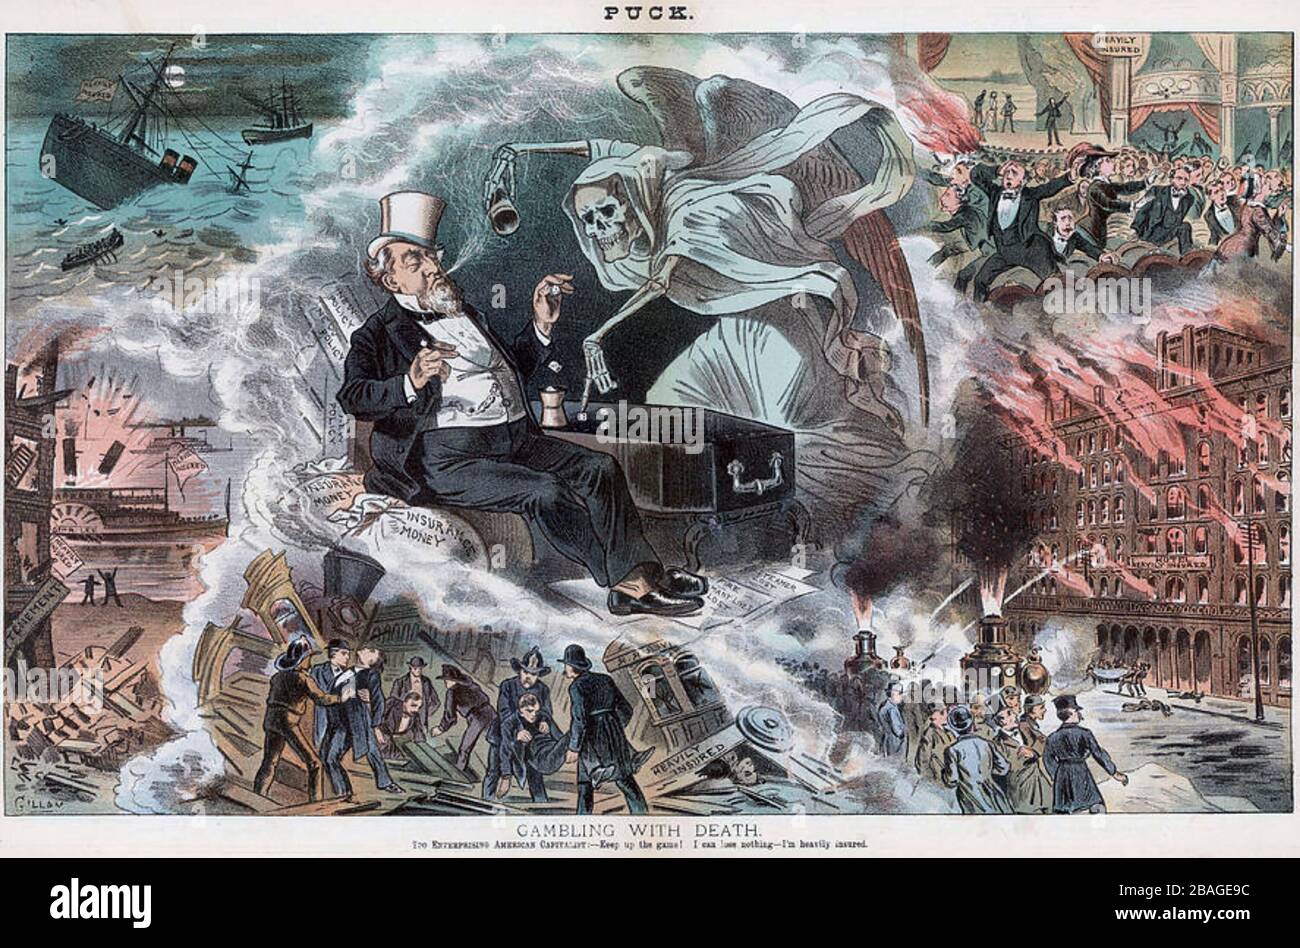 GIOCO D'AZZARDO CON LA MORTE la rivista americana Puck lampoons capitalismo in un cartone animato nel gennaio 1883 Foto Stock